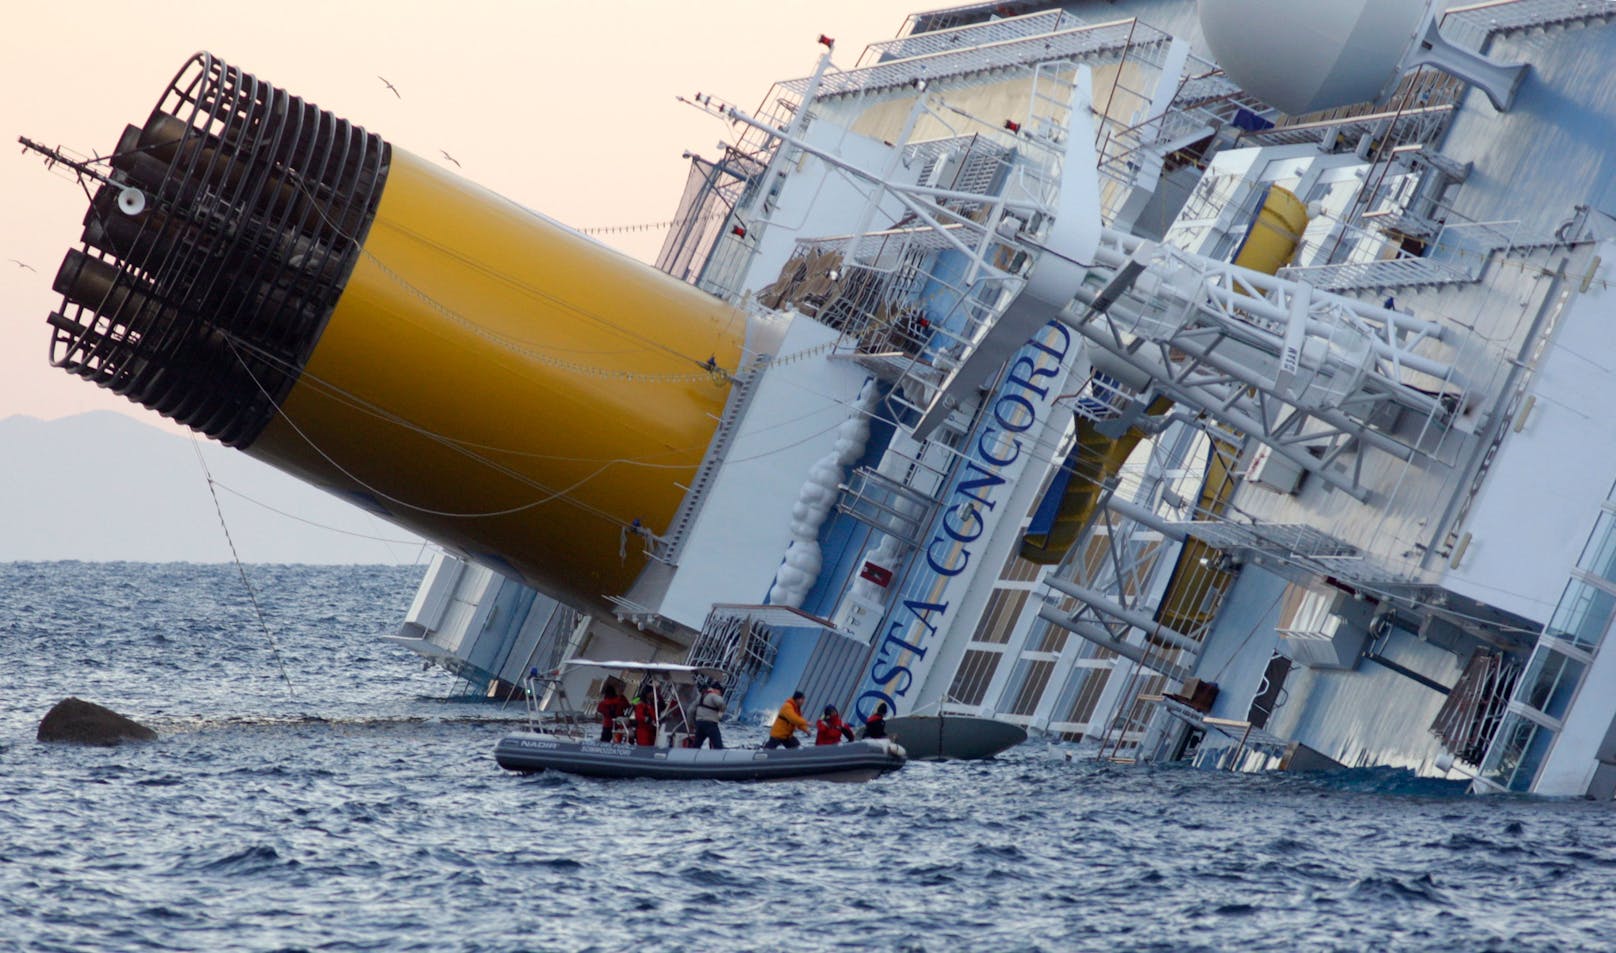 Havarie vor der italienischen Insel Giglio: Die Costa Concordia rammte einen Felsen und sank.